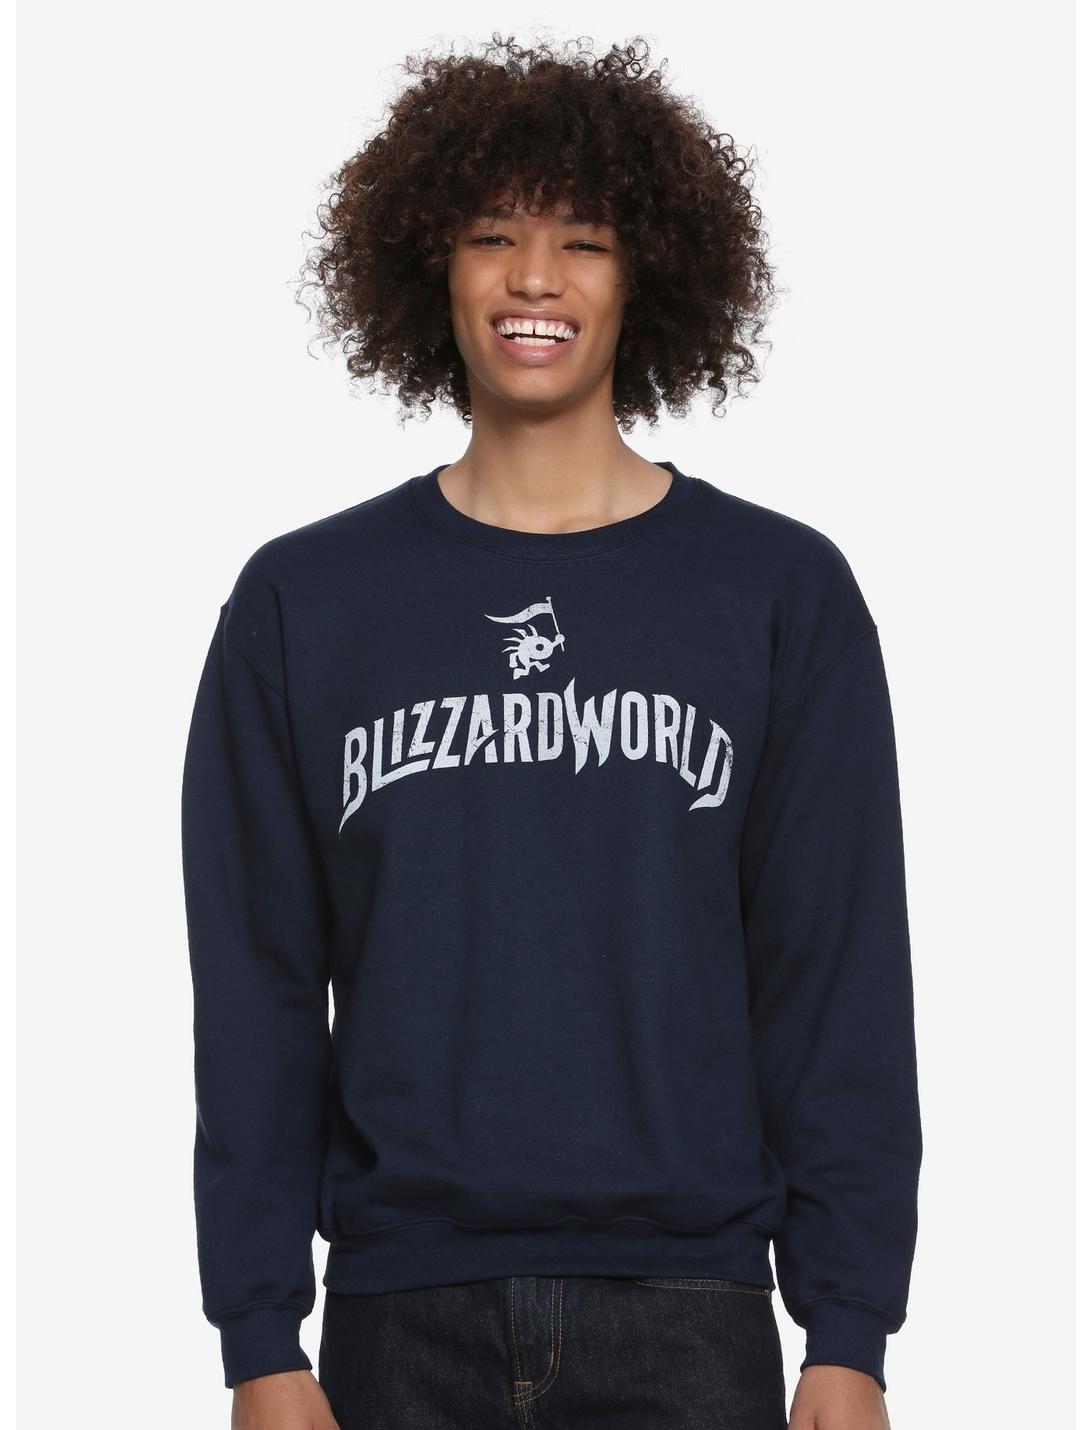 Overwatch Blizzard World Crewneck Sweatshirt, BLUE, hi-res